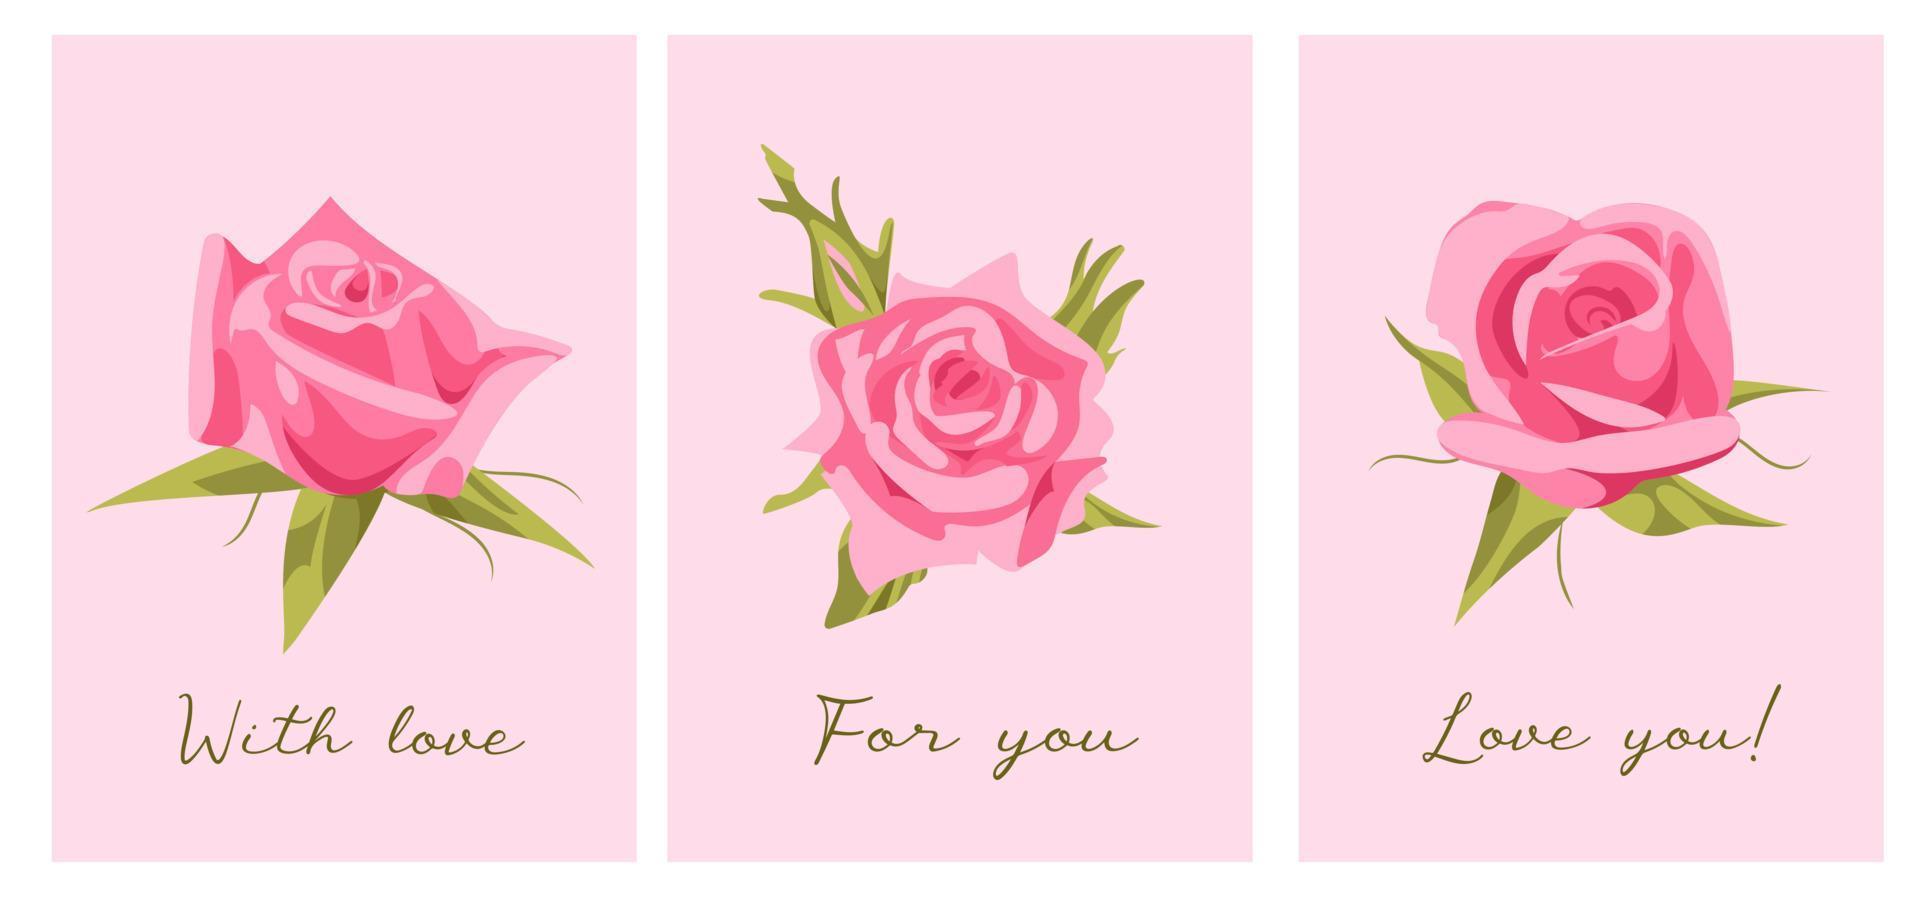 stellen sie nette vektorillustration für valentinstag ein. elegante realistische rosa rosen mit text. dich lieben. für Postkarten, Poster, Kleiderdruck vektor